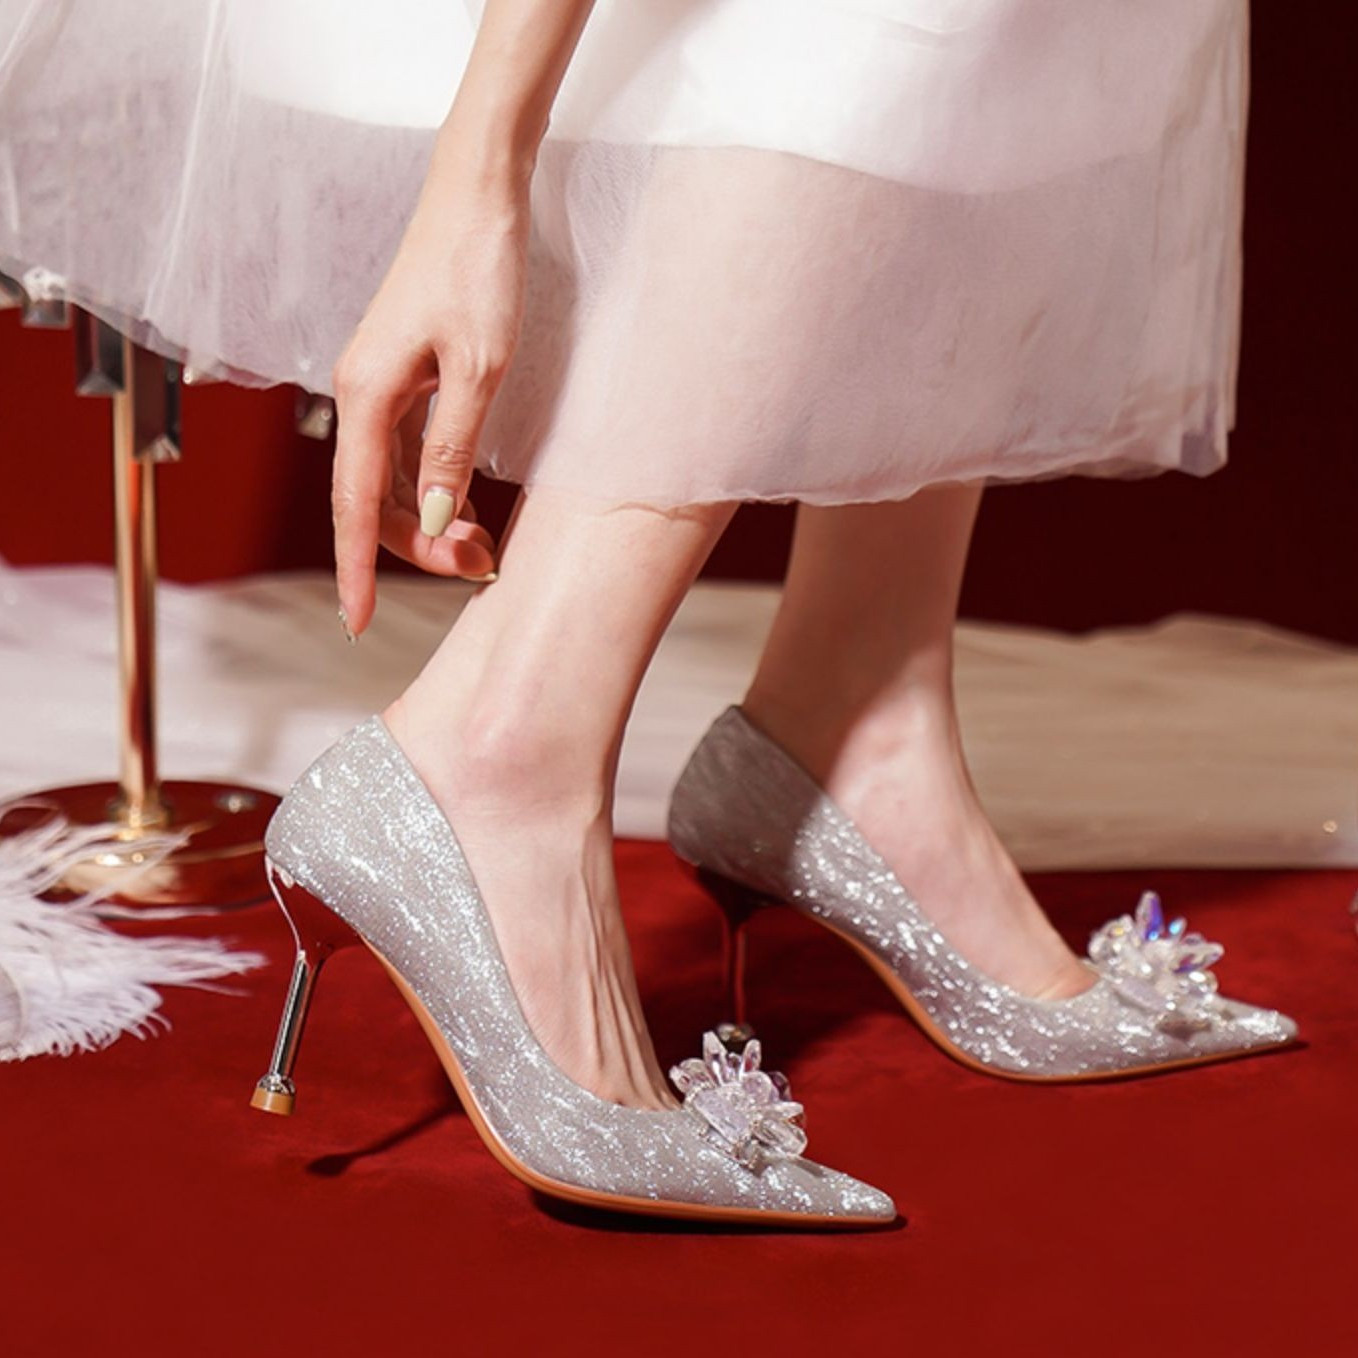 水晶婚鞋新娘鞋女年新款婚纱秀禾服两穿法式银色高跟鞋女细跟